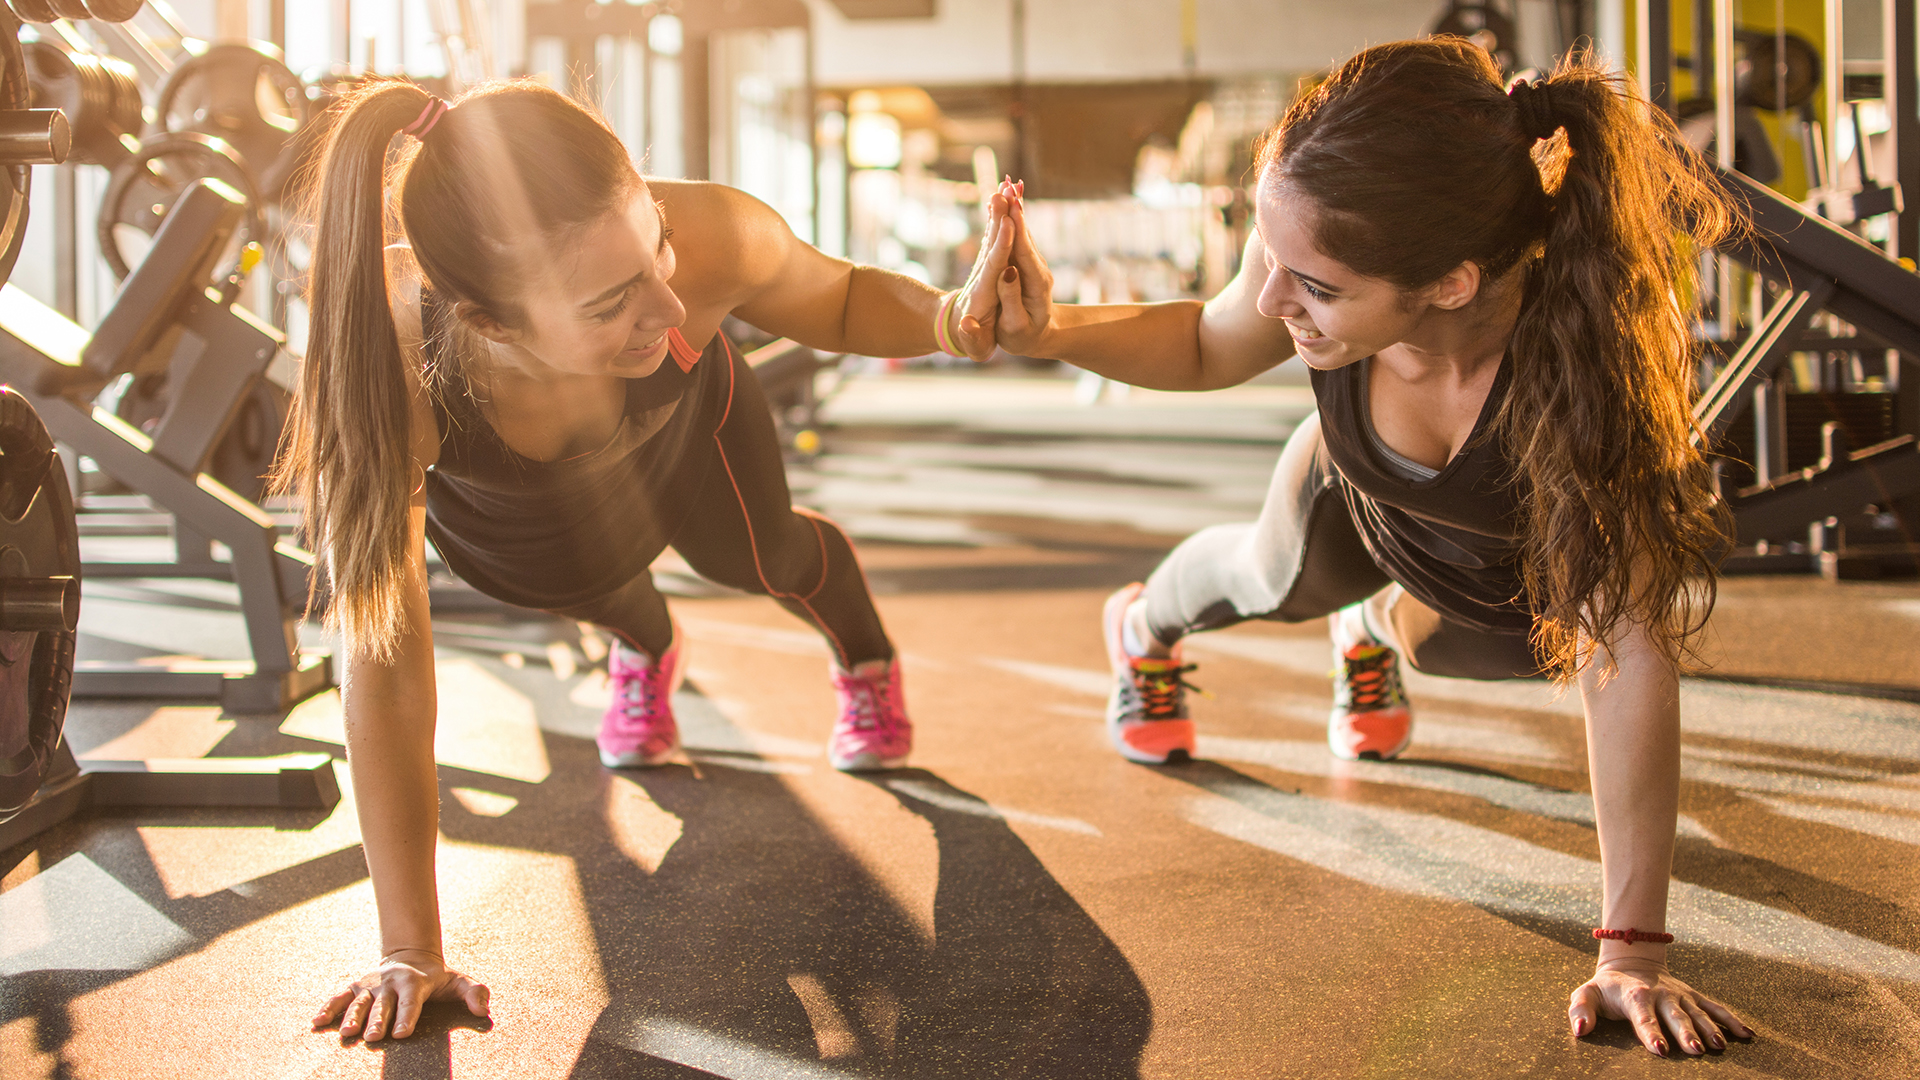 Las participantes femeninas que hacían ejercicio por la mañana quemaron un 7% más de grasa abdominal y redujeron su presión arterial un 7% más que aquellas que hacían ejercicio por la noche
(Getty Images)